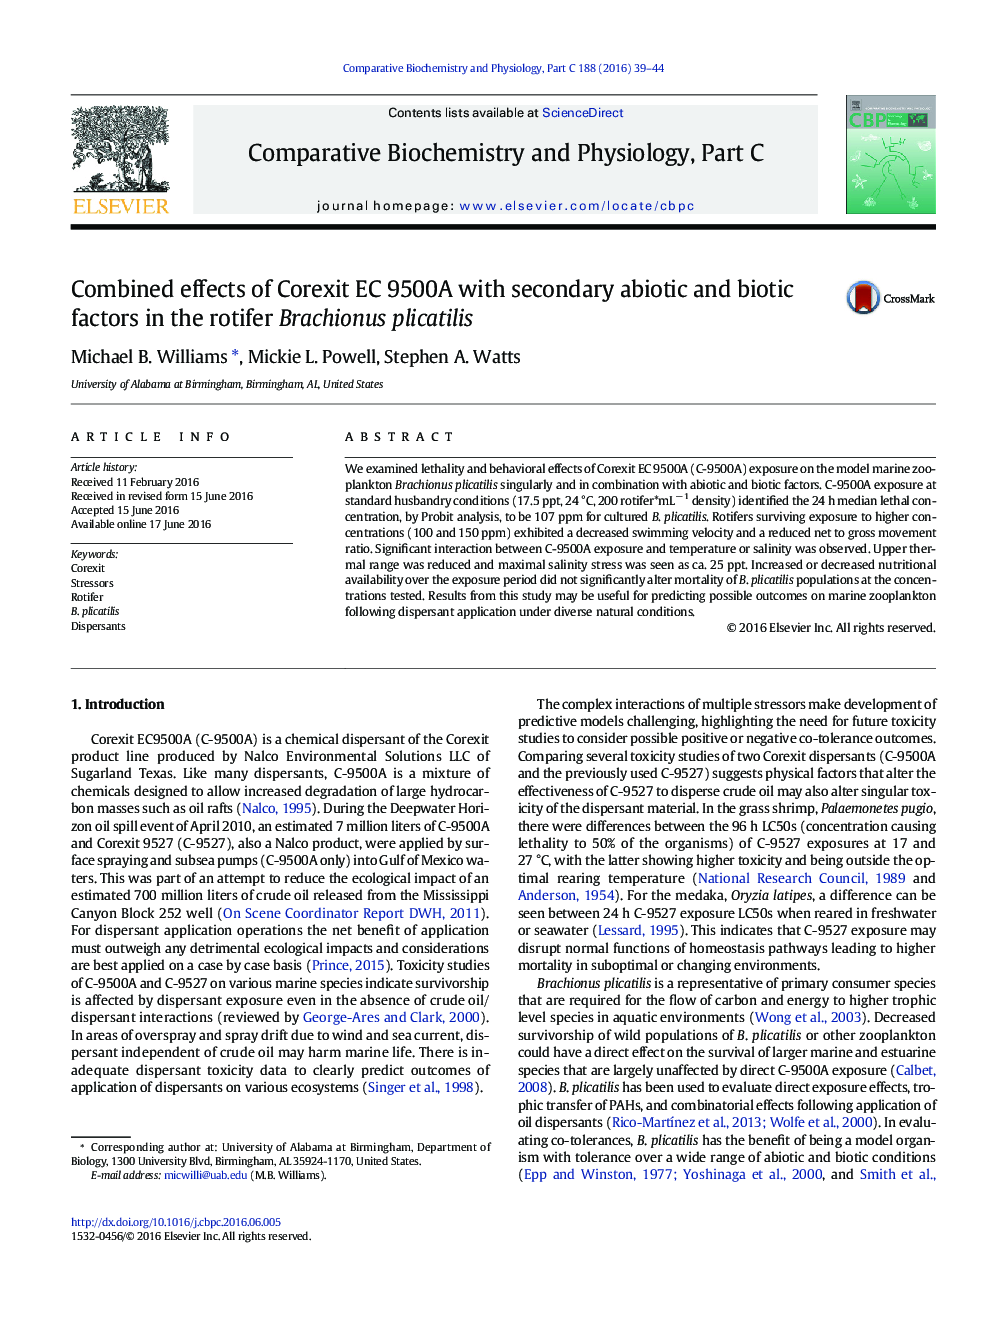 اثر ترکیبی از Corexit EC 9500A با عوامل غیر جاندار و جاندار ثانویه در plicatilis روتیفر گونه Brachionus